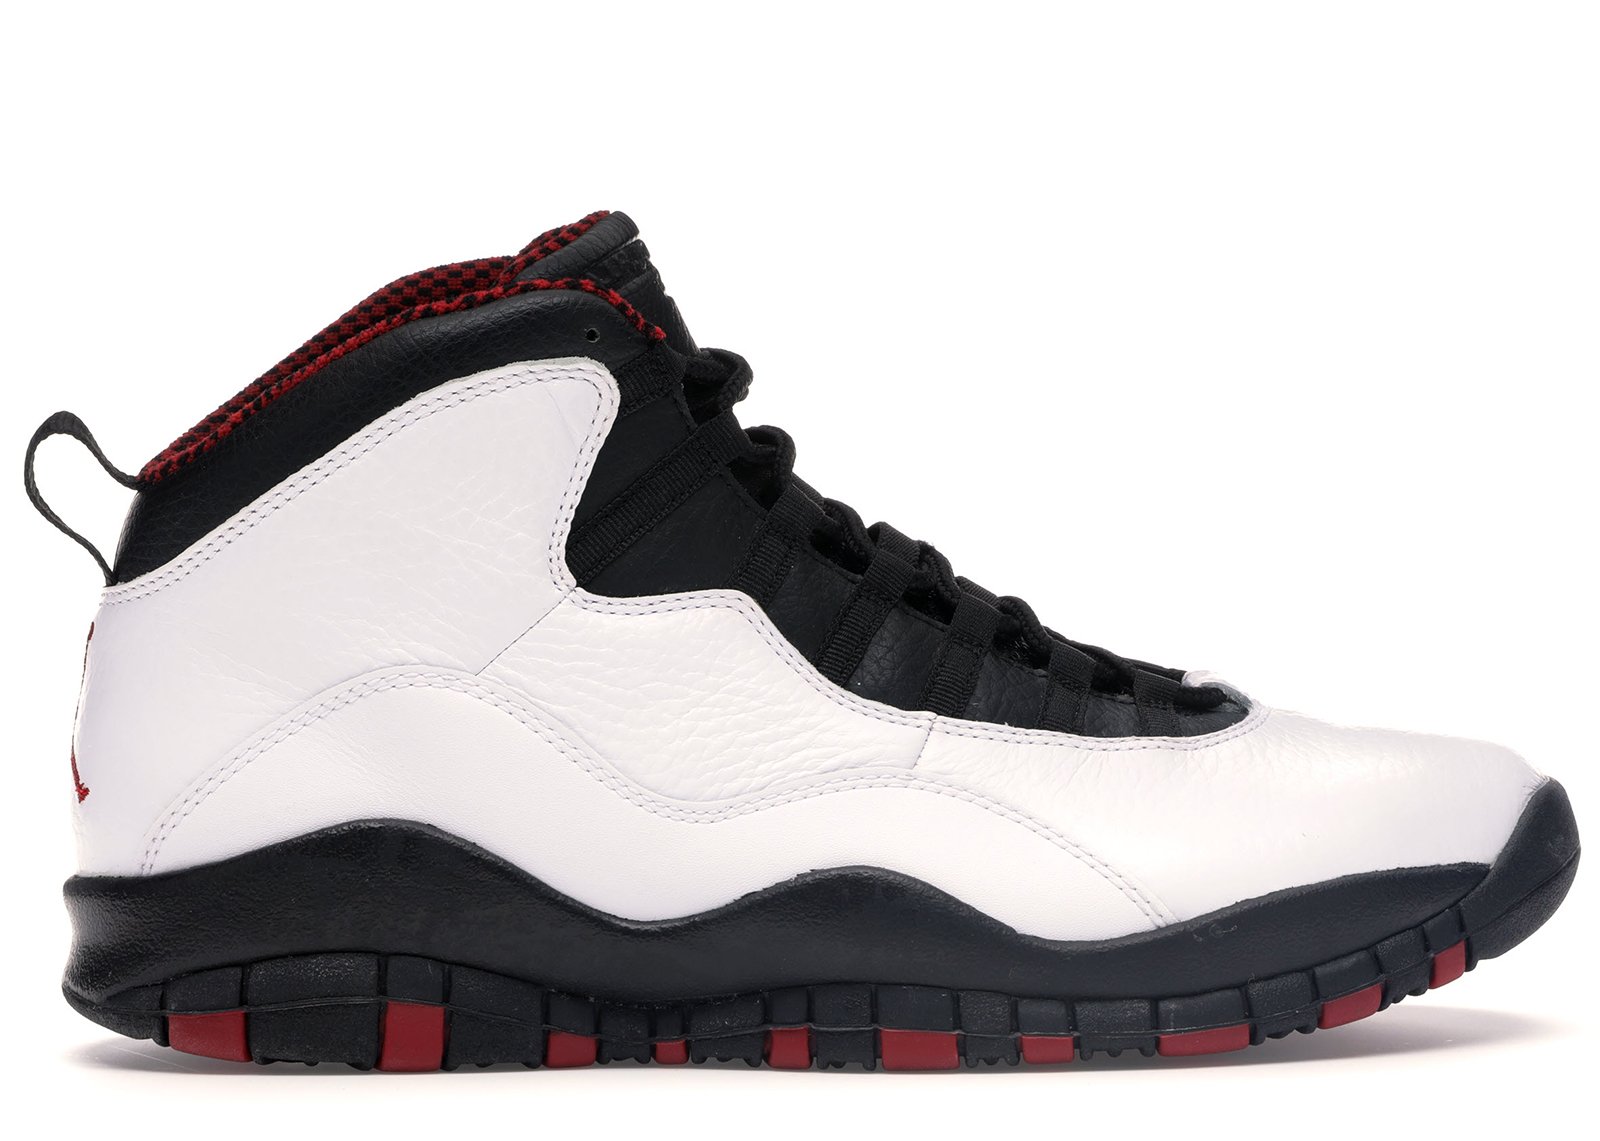 Jordan 10 Retro Chicago Bulls (2012) sneakers